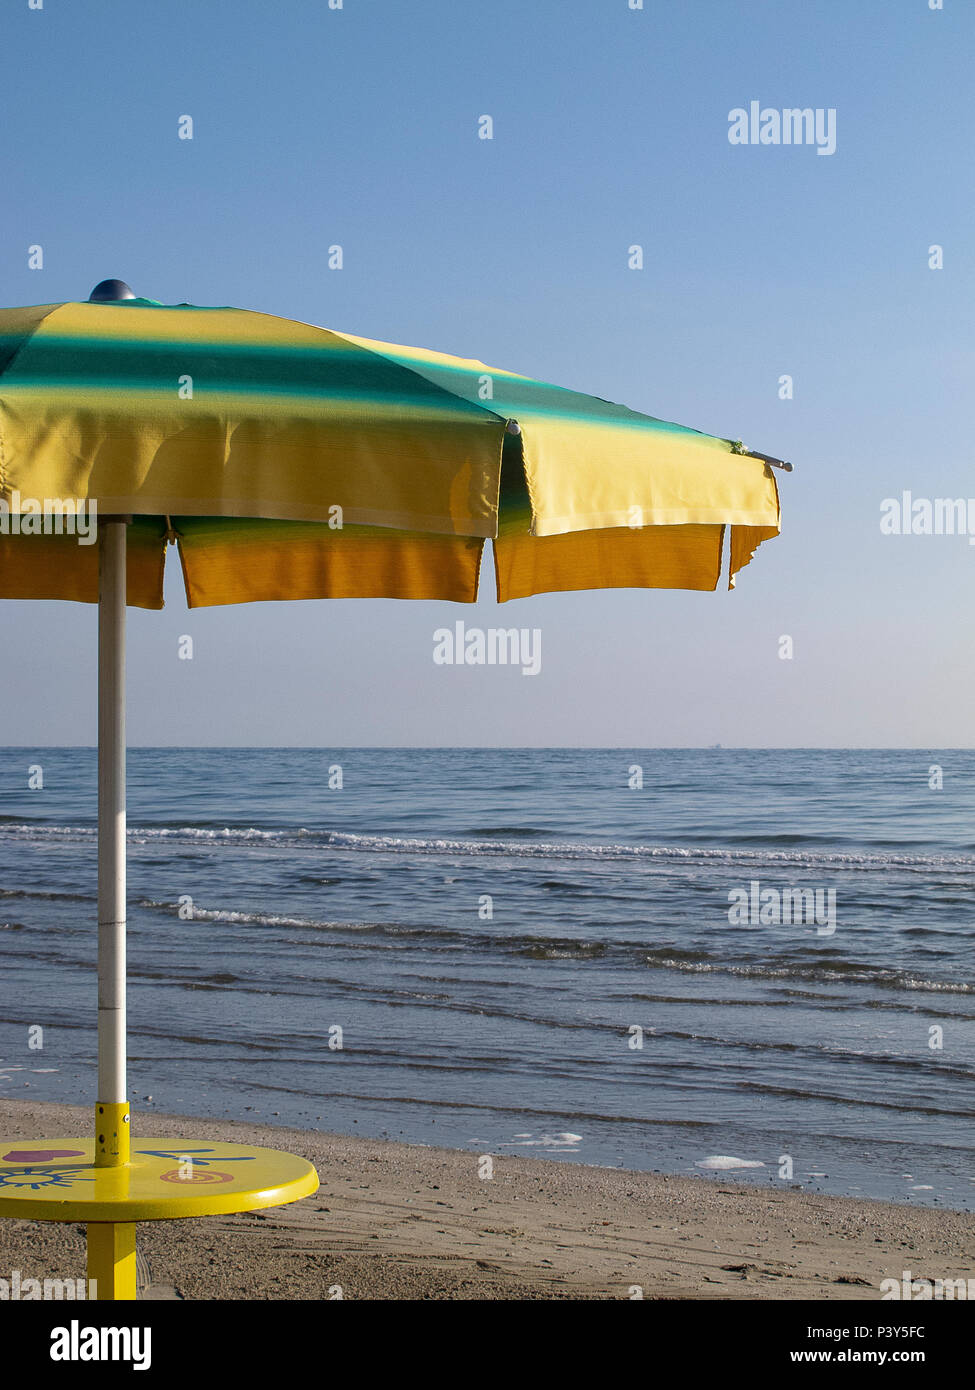 Bạn muốn tận hưởng những ngày hè nóng bức trên bãi biển mà không lo nắng mưa? Hãy xem hình ảnh về dù che! Những khoảnh khắc thư giãn và đầy màu sắc đang chờ đón bạn.